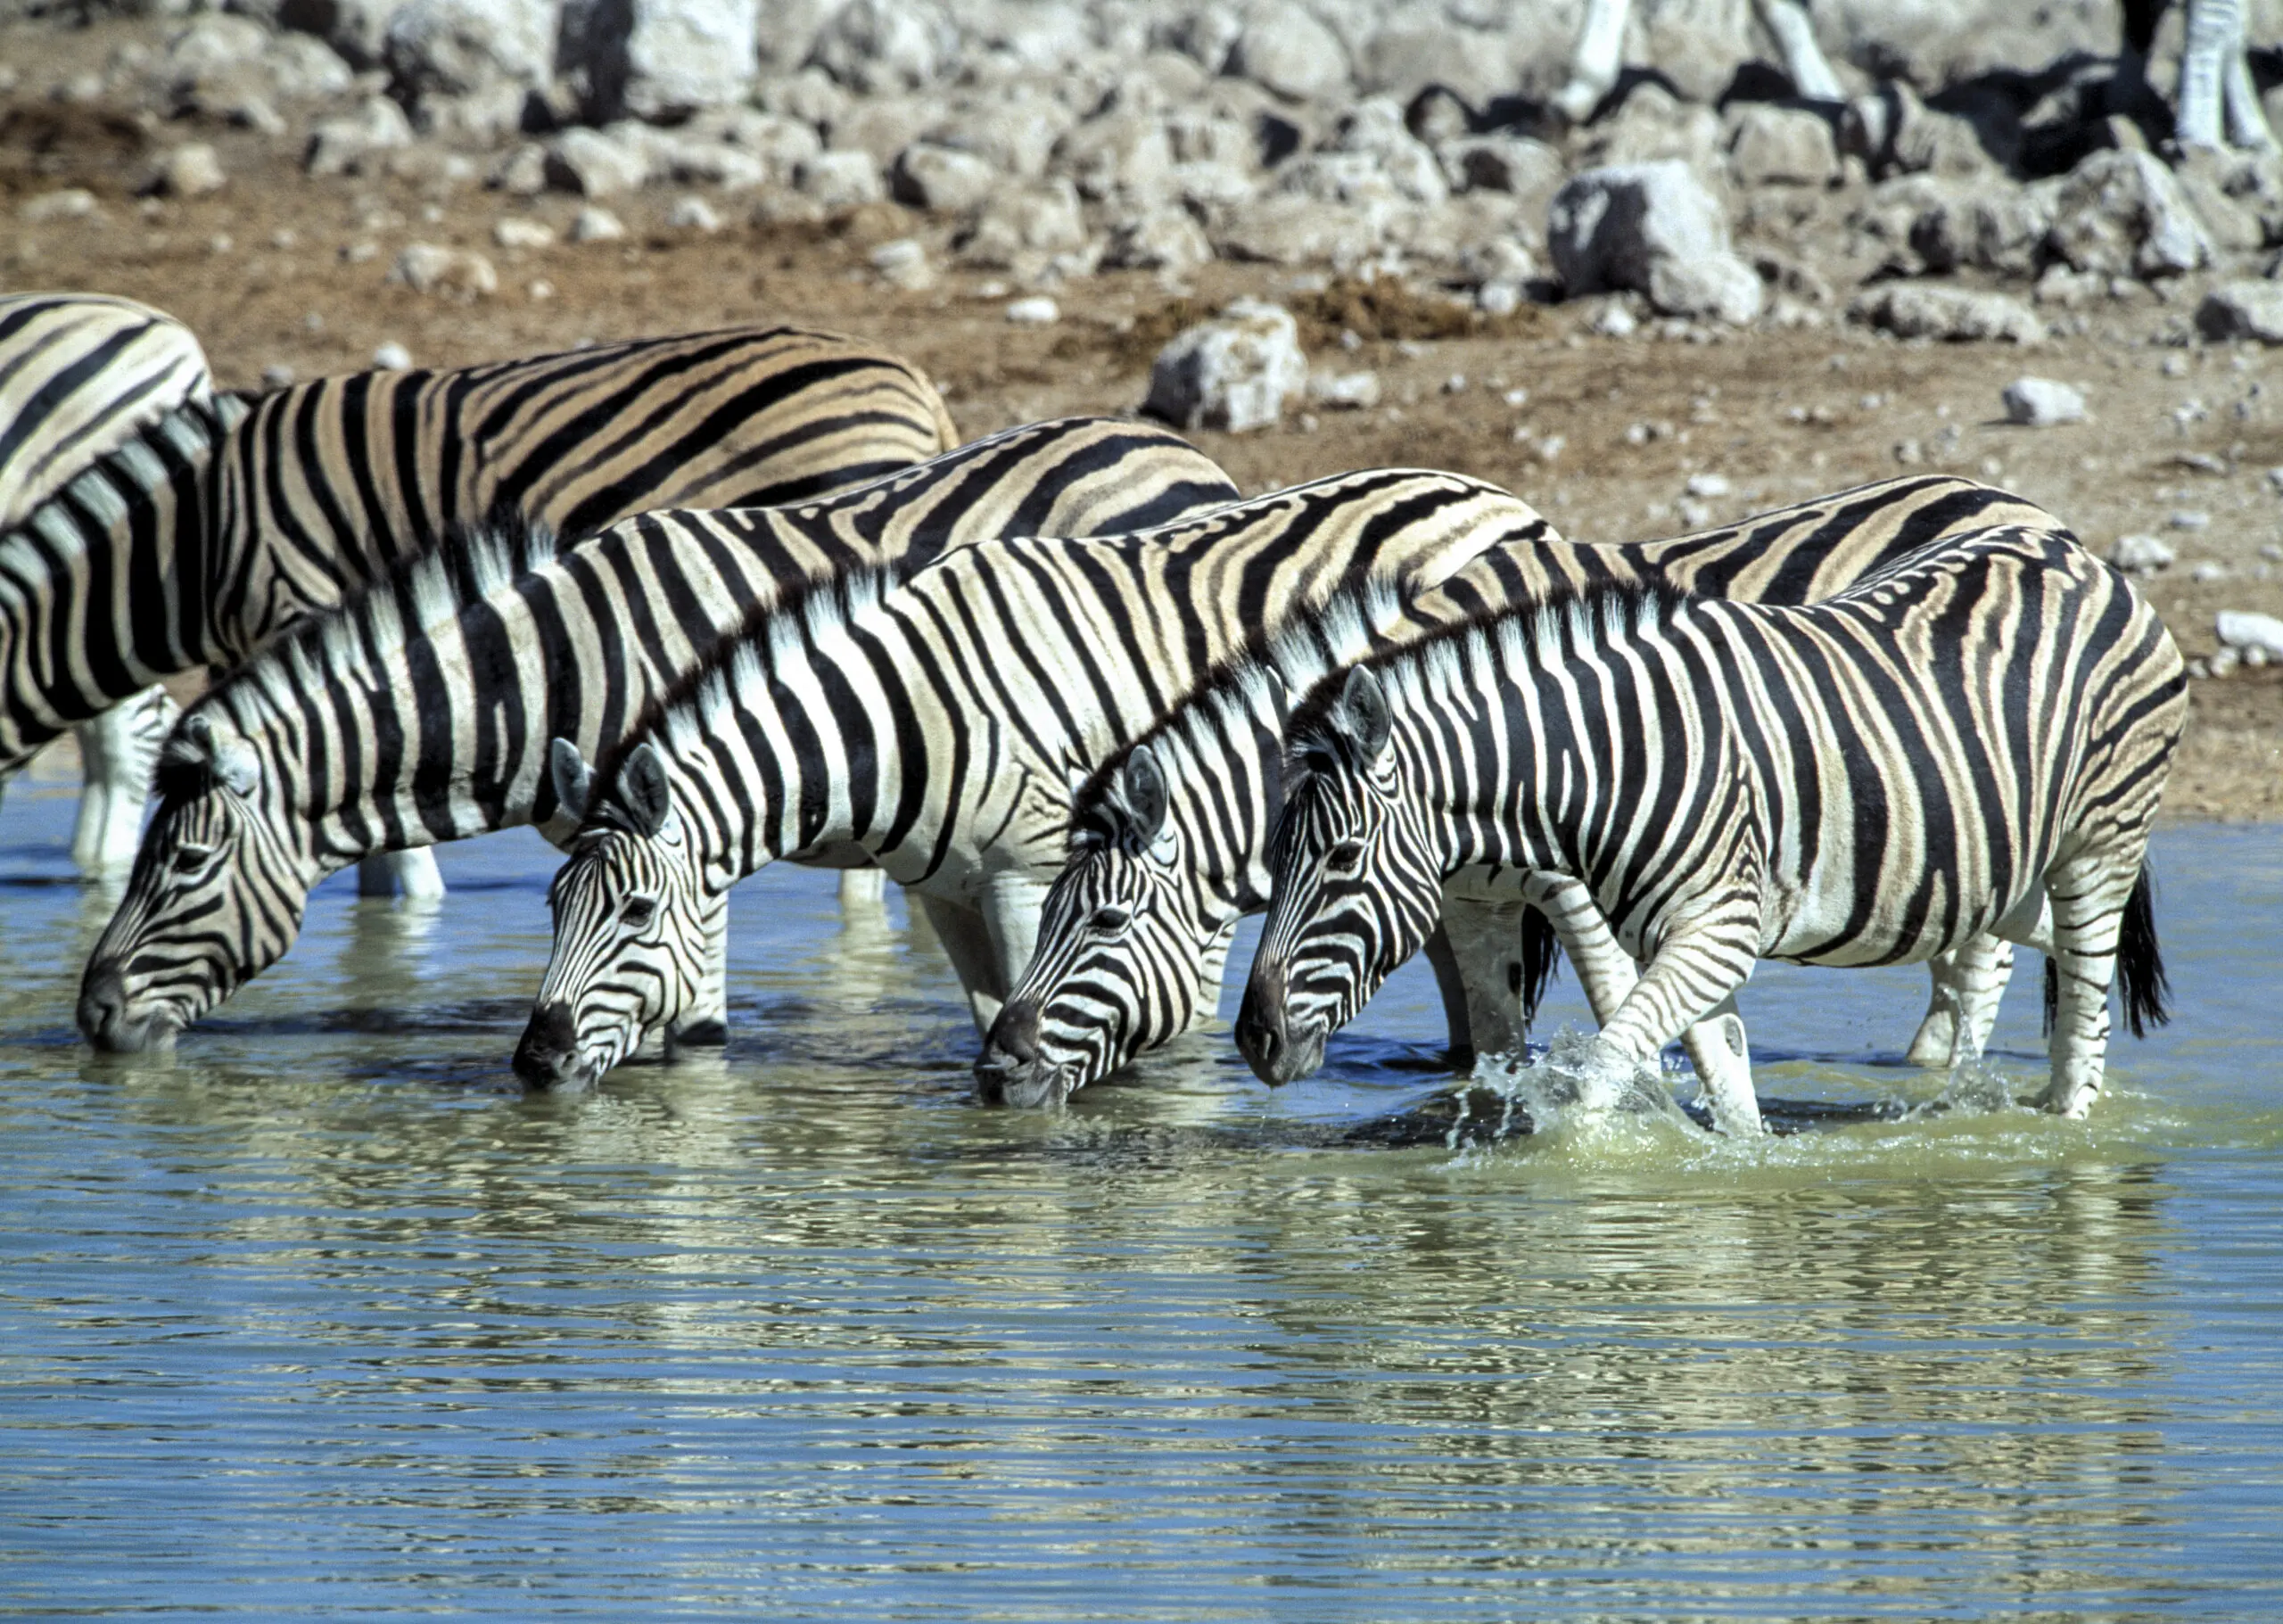 Wandbild (240) Zebra präsentiert: Wasser,Tiere,Sonstige Tiere,Wildtiere,Aus Afrika,Bäche und Flüsse